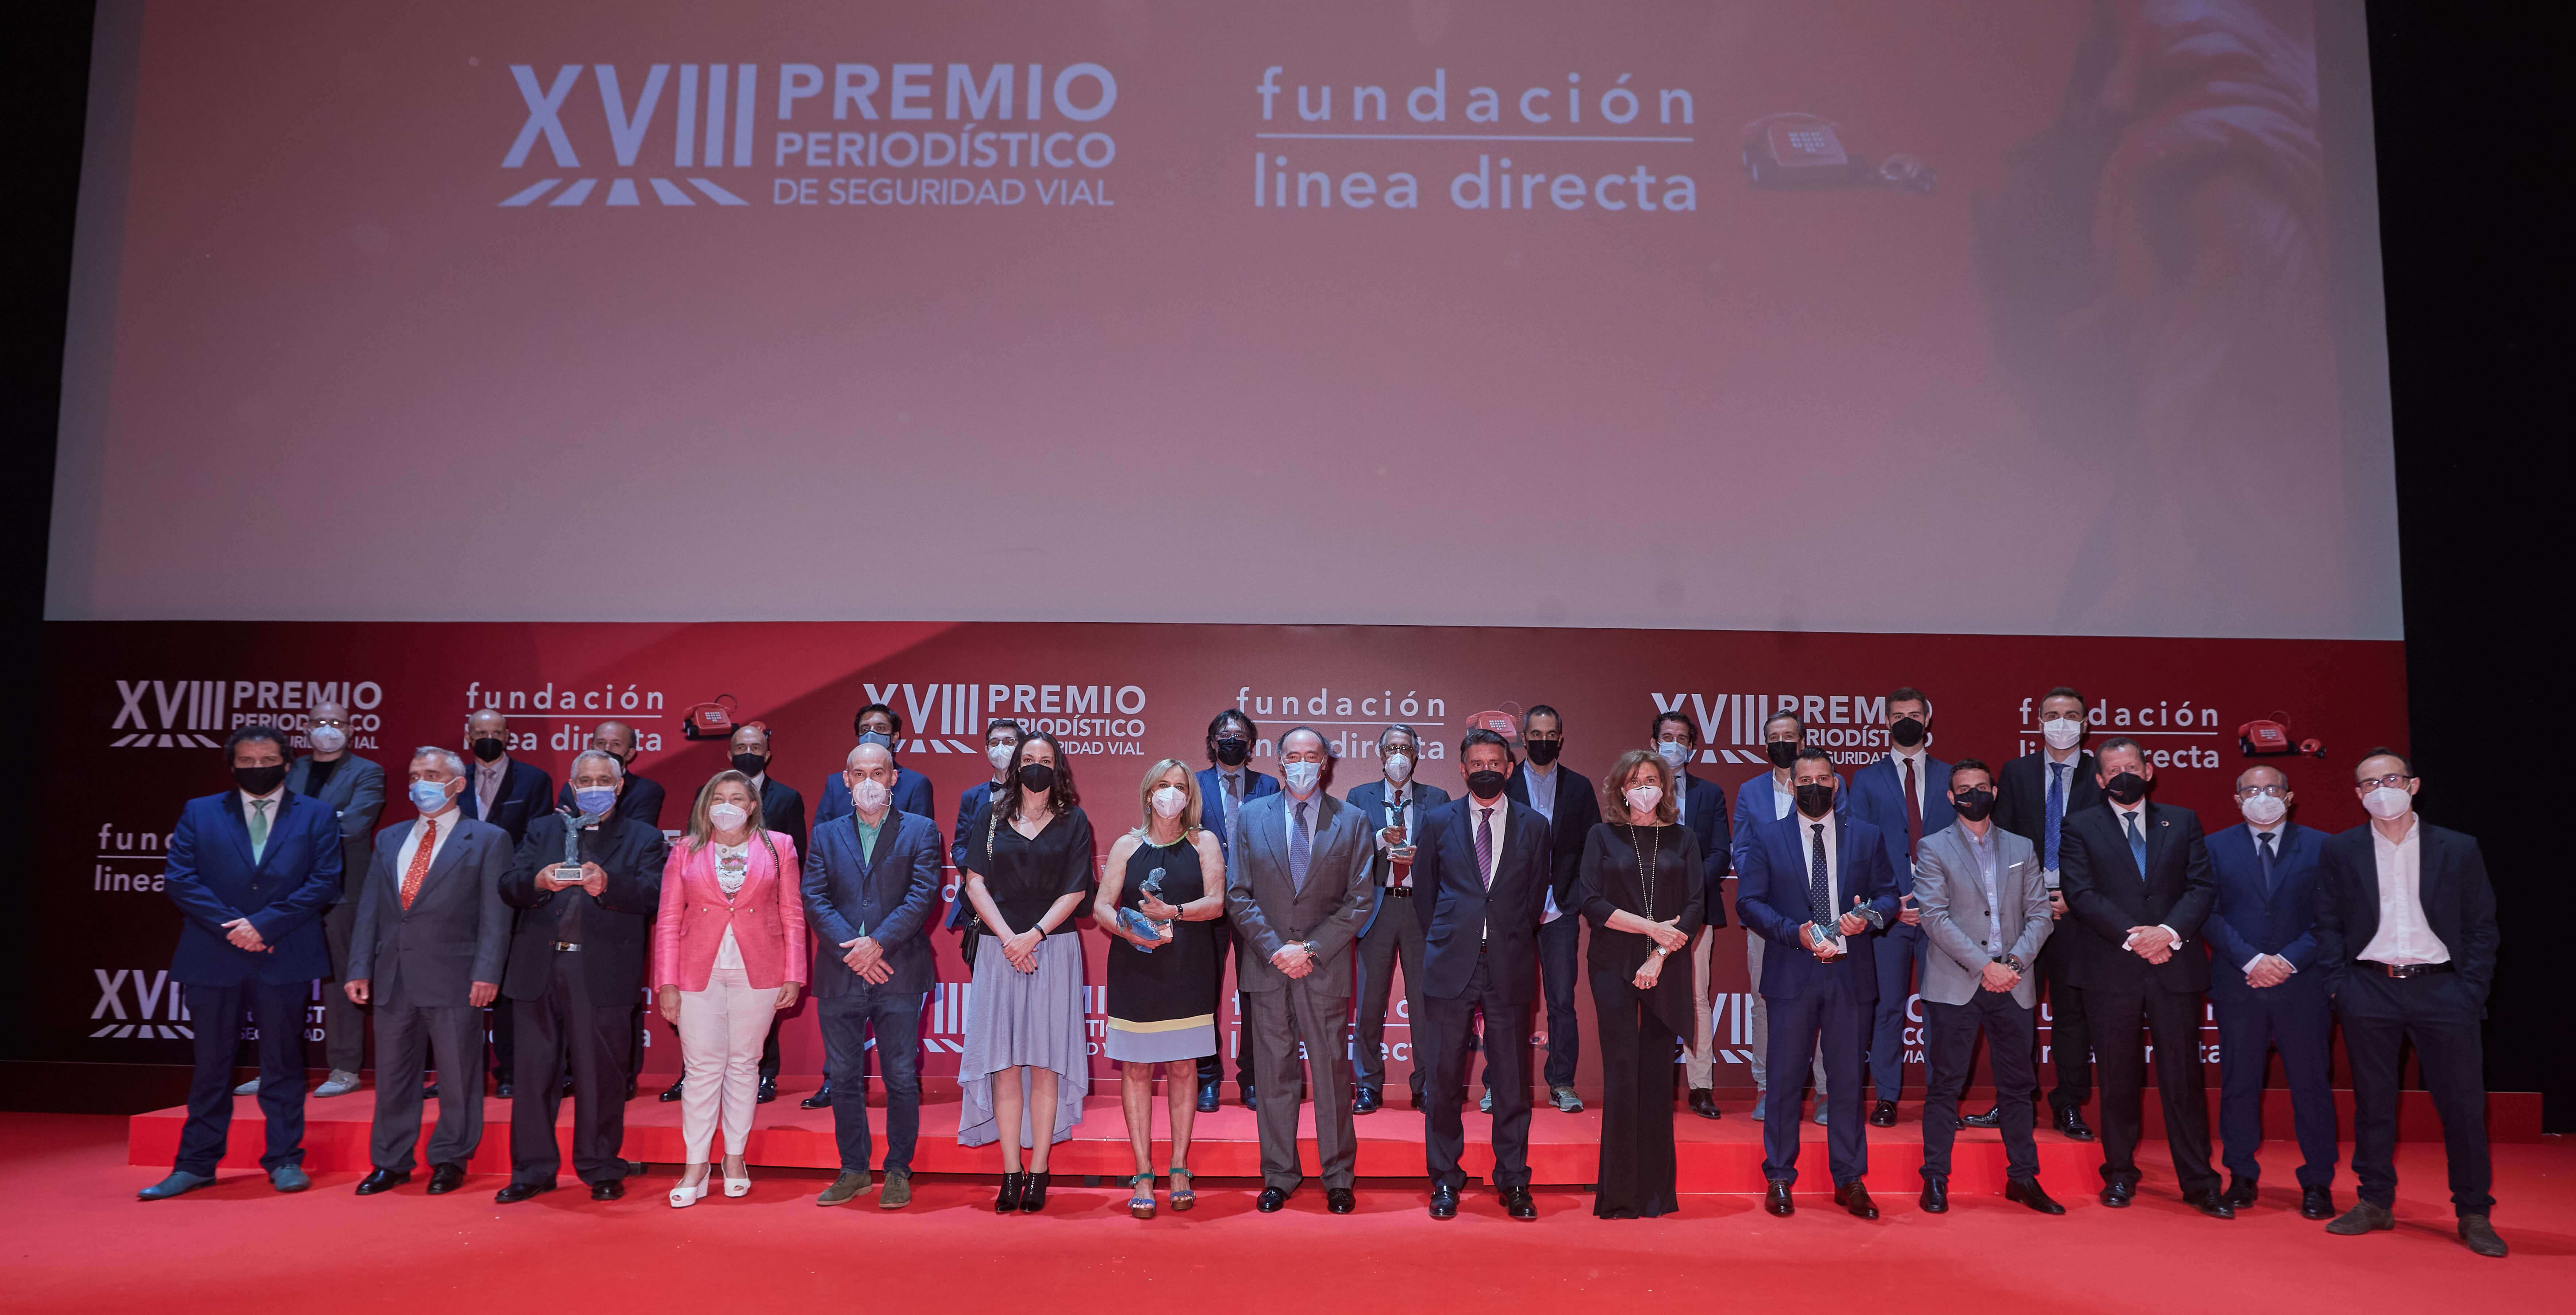 Ganadores de la XVIII Premio Periodístico de Seguridad Vial de la Fundación Línea